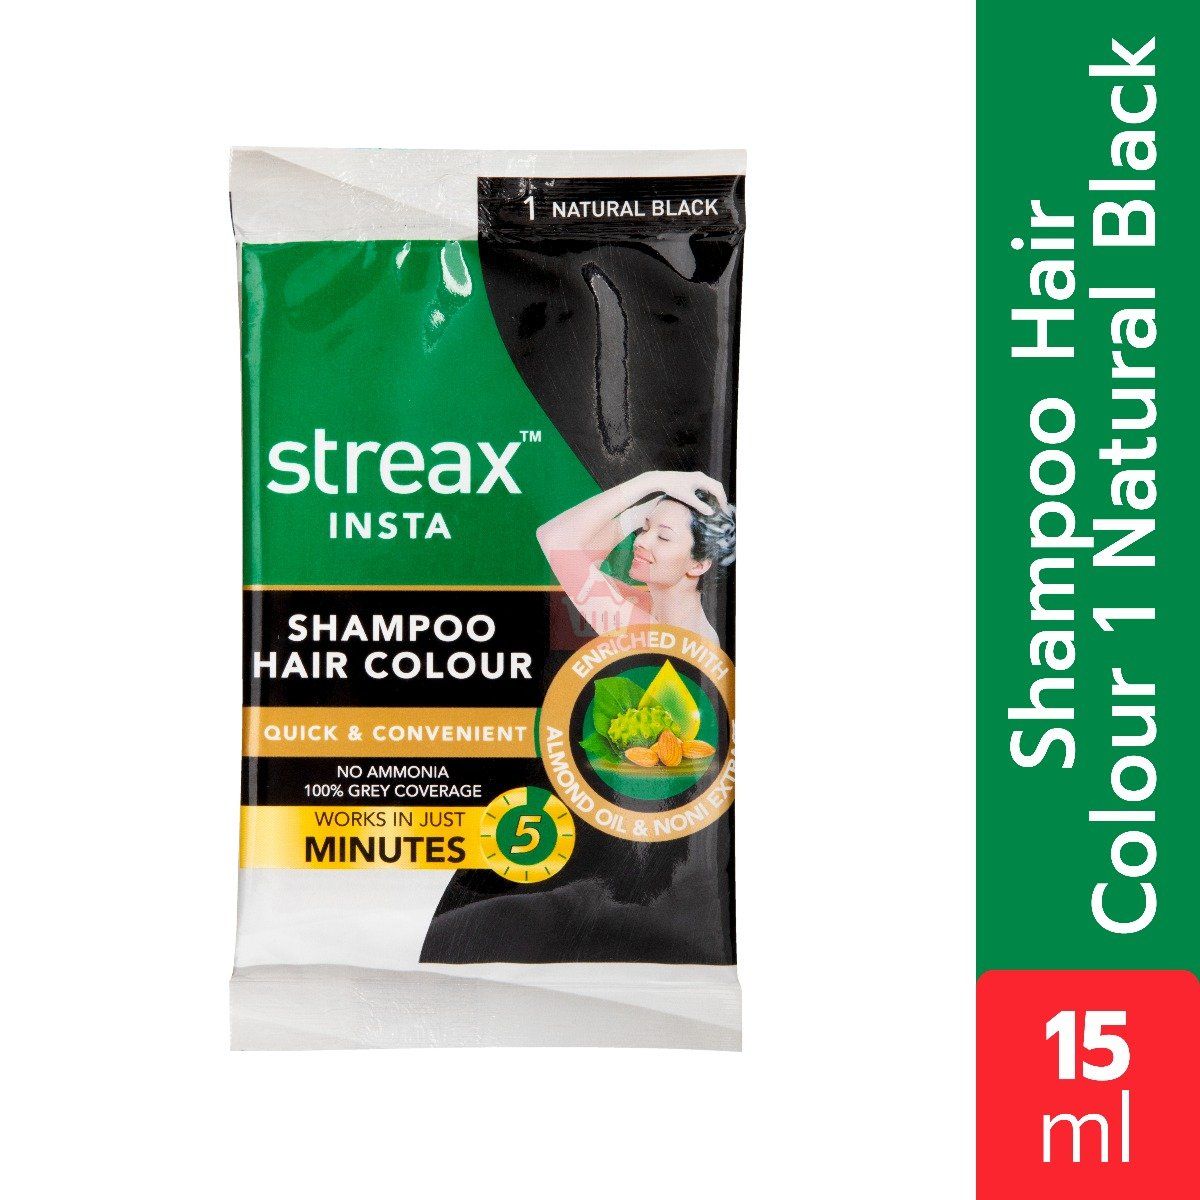 Streax Insta Shampoo Hair Colour 1 Natural Black- 15ml